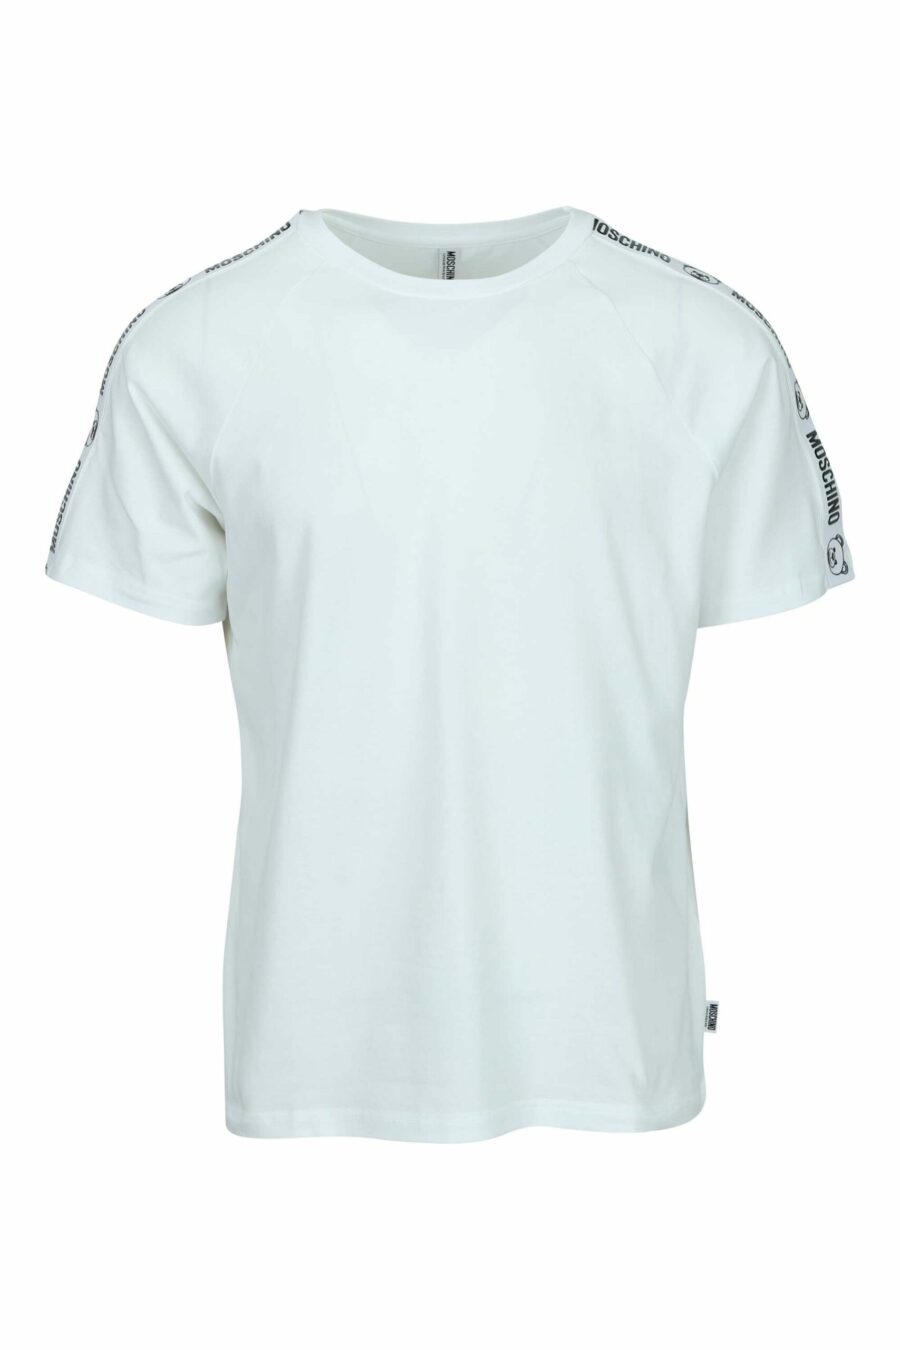 T-shirt blanc avec logo d'ours "underbear" sur la bande d'épaule - 667113602462 scaled